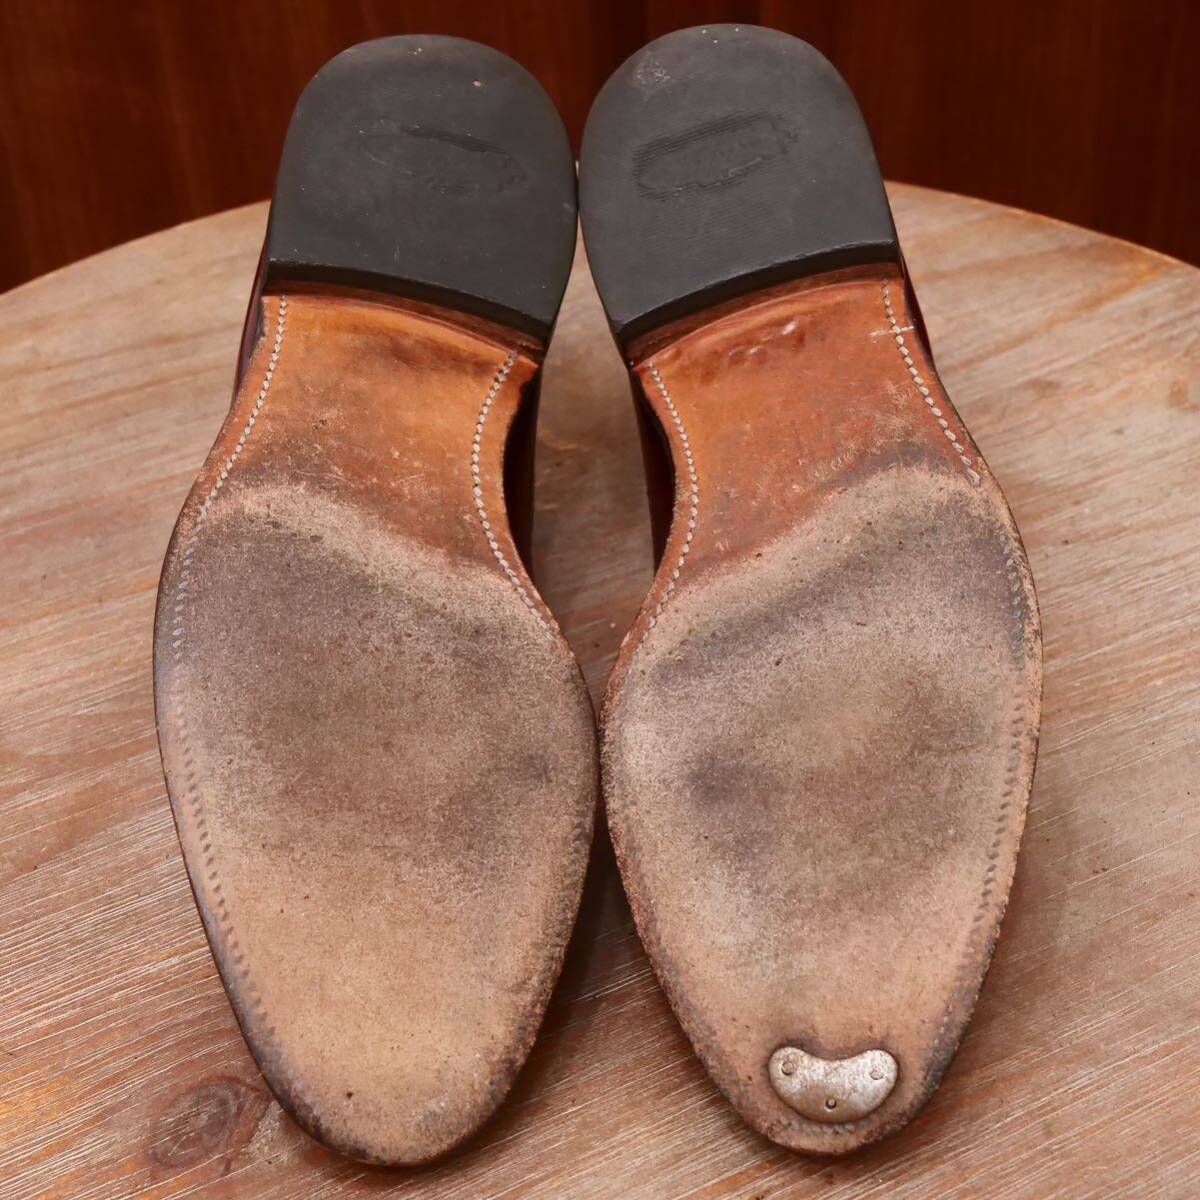  хорошая вещь *[Allen Edmonds]a Len Ed monz Wing chip Loafer US10.5C бизнес обувь casual мужской кожа обувь 